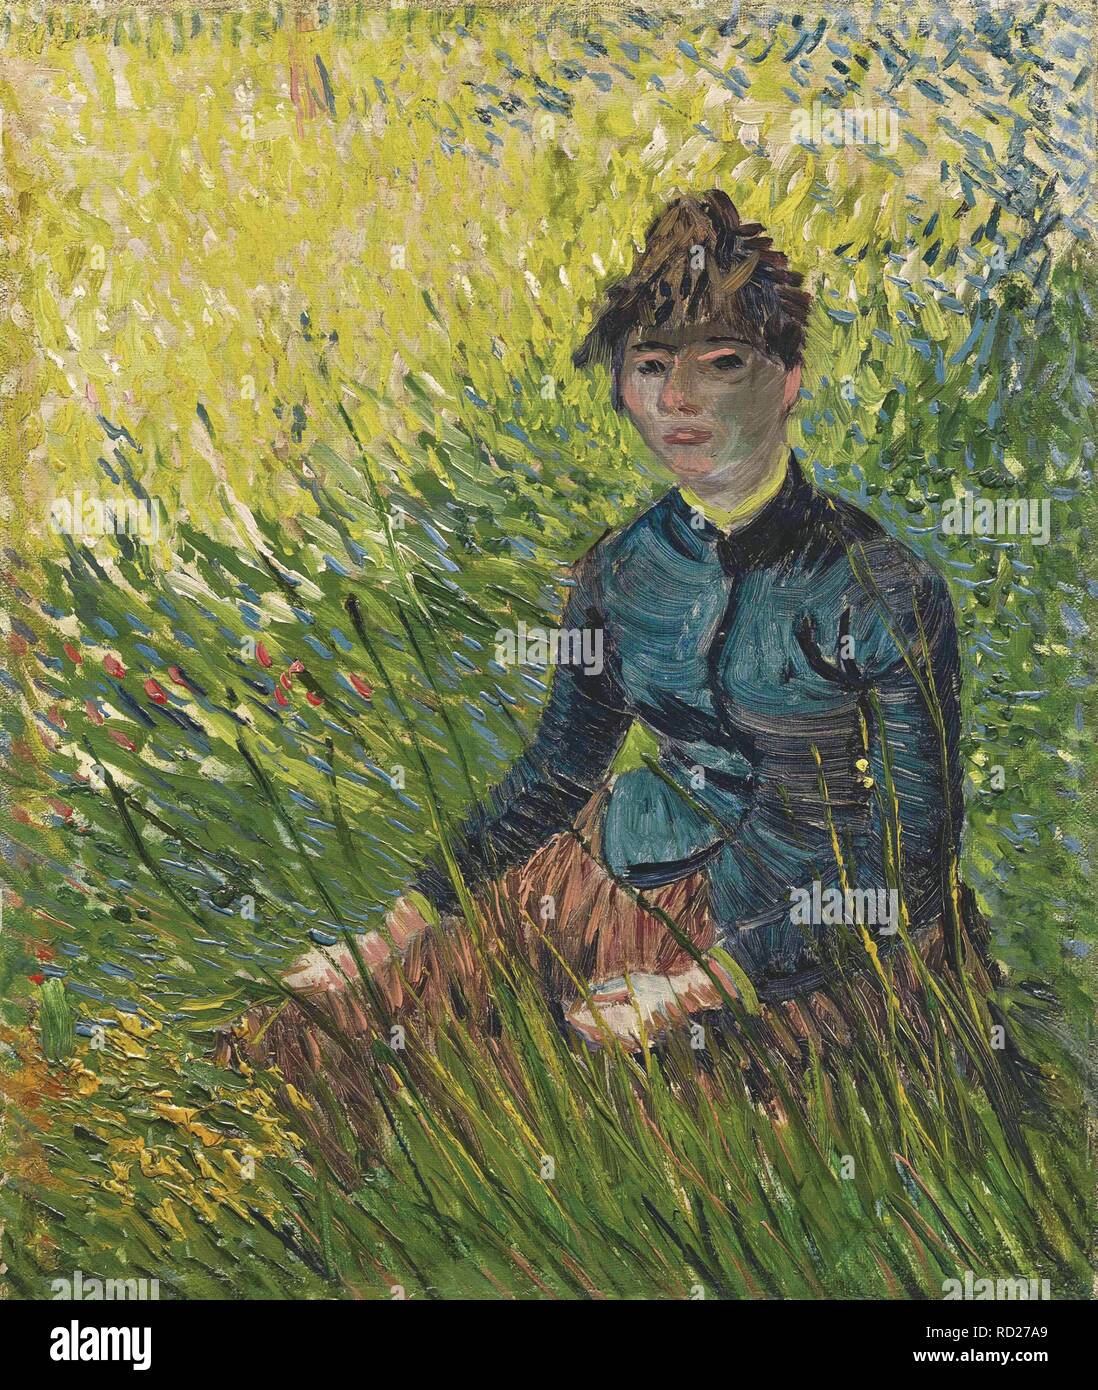 Woman in a wheat field (Femme dans un champ de blé). Museum: PRIVATE COLLECTION. Author: VAN GOGH, VINCENT. Stock Photo